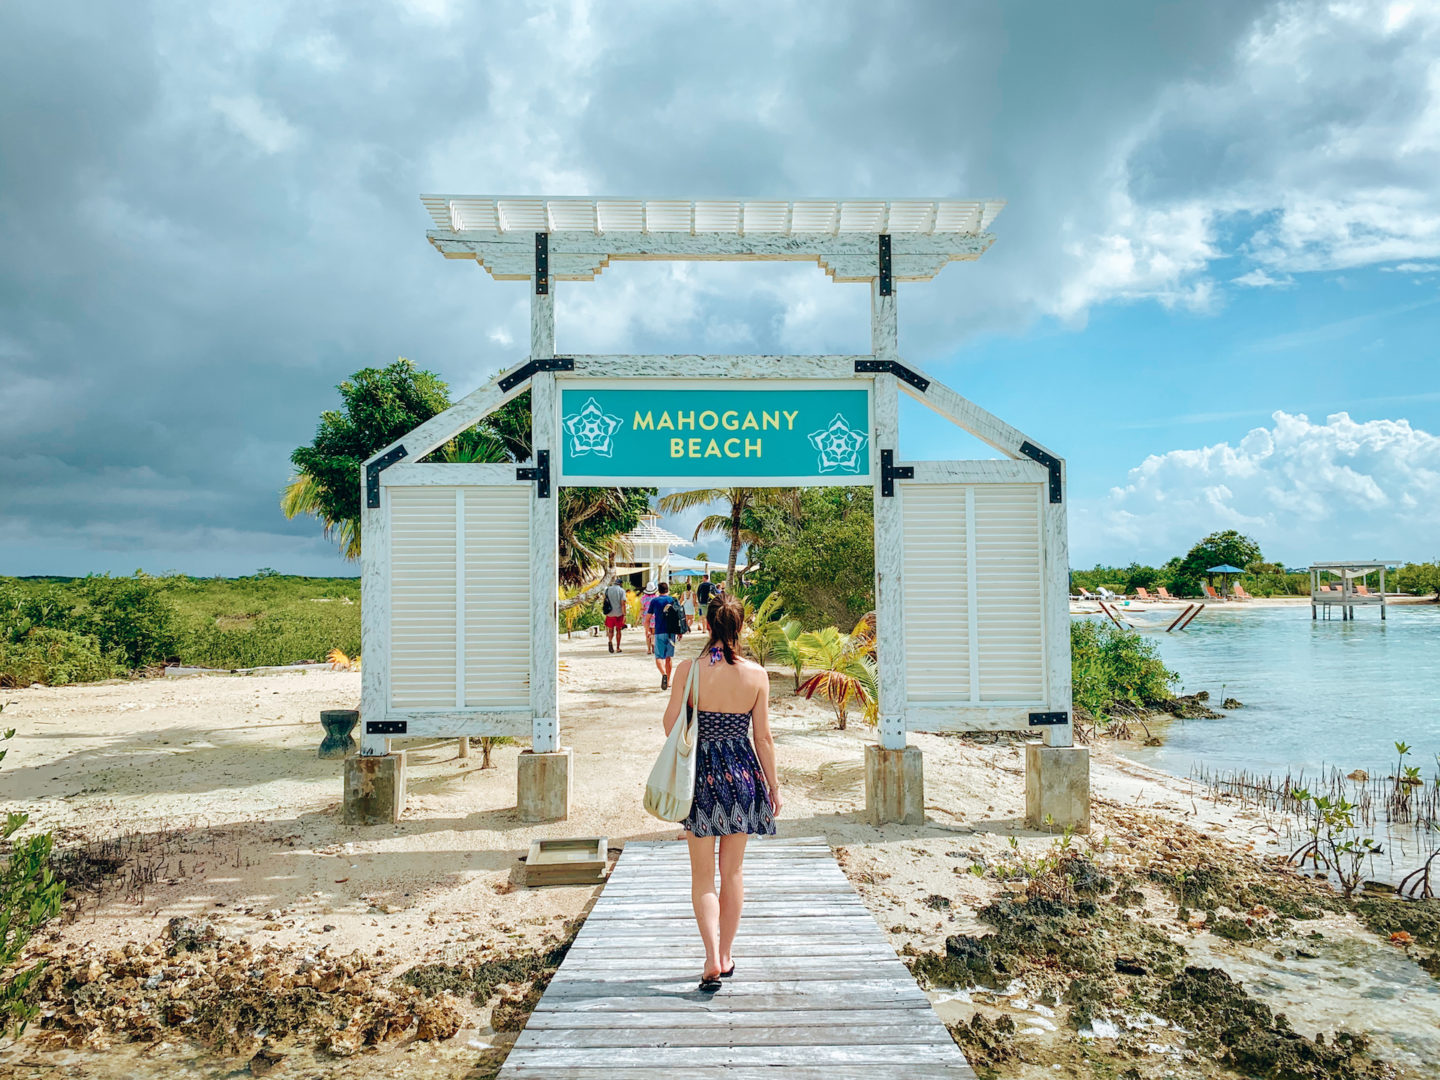 Mahogany Bay Beach Club - Mahogany Bay, Belize